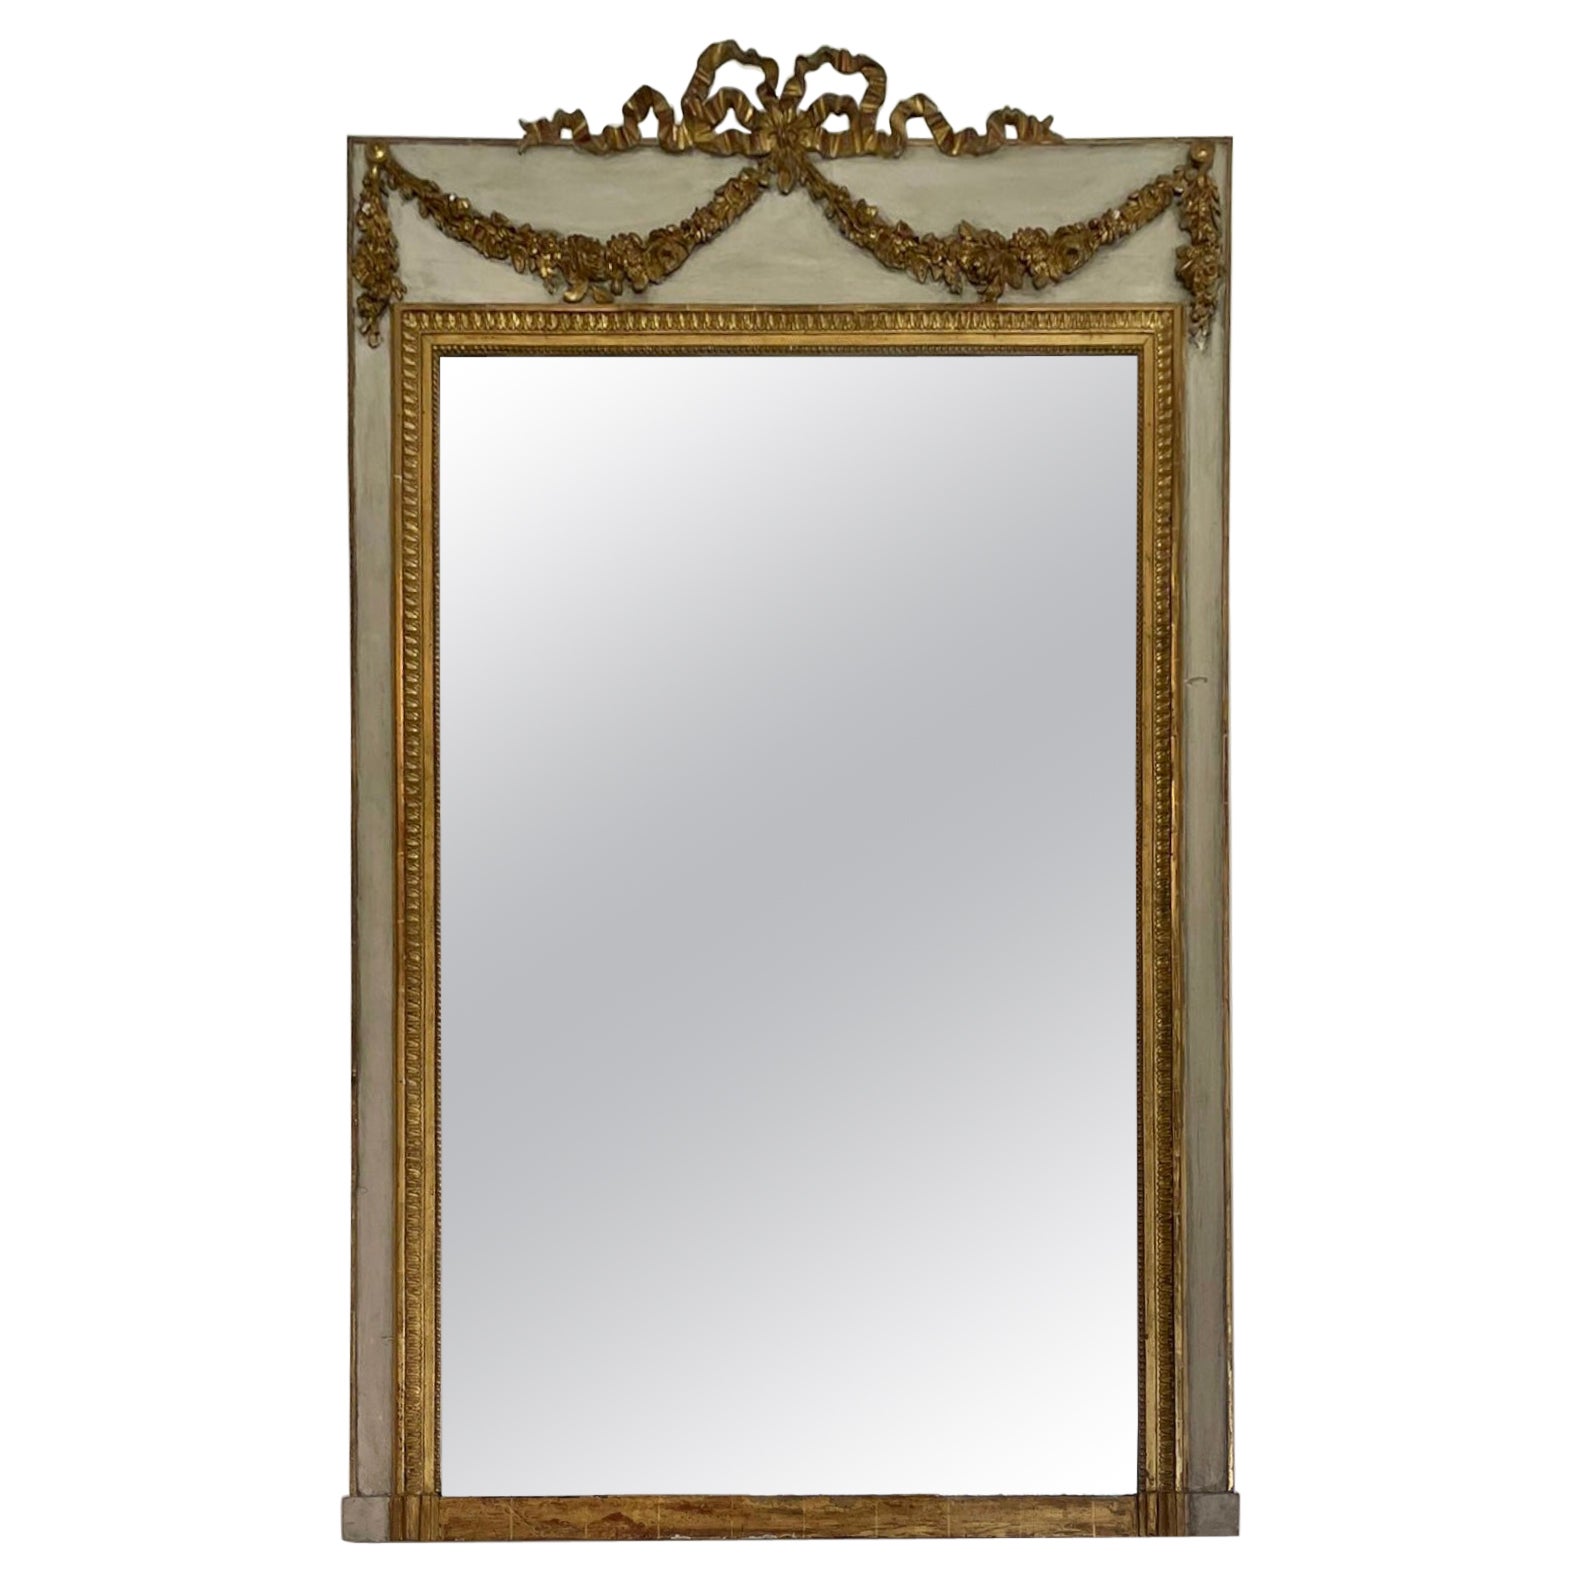 Grand miroir victorien ancien en bois doré et peint en blanc